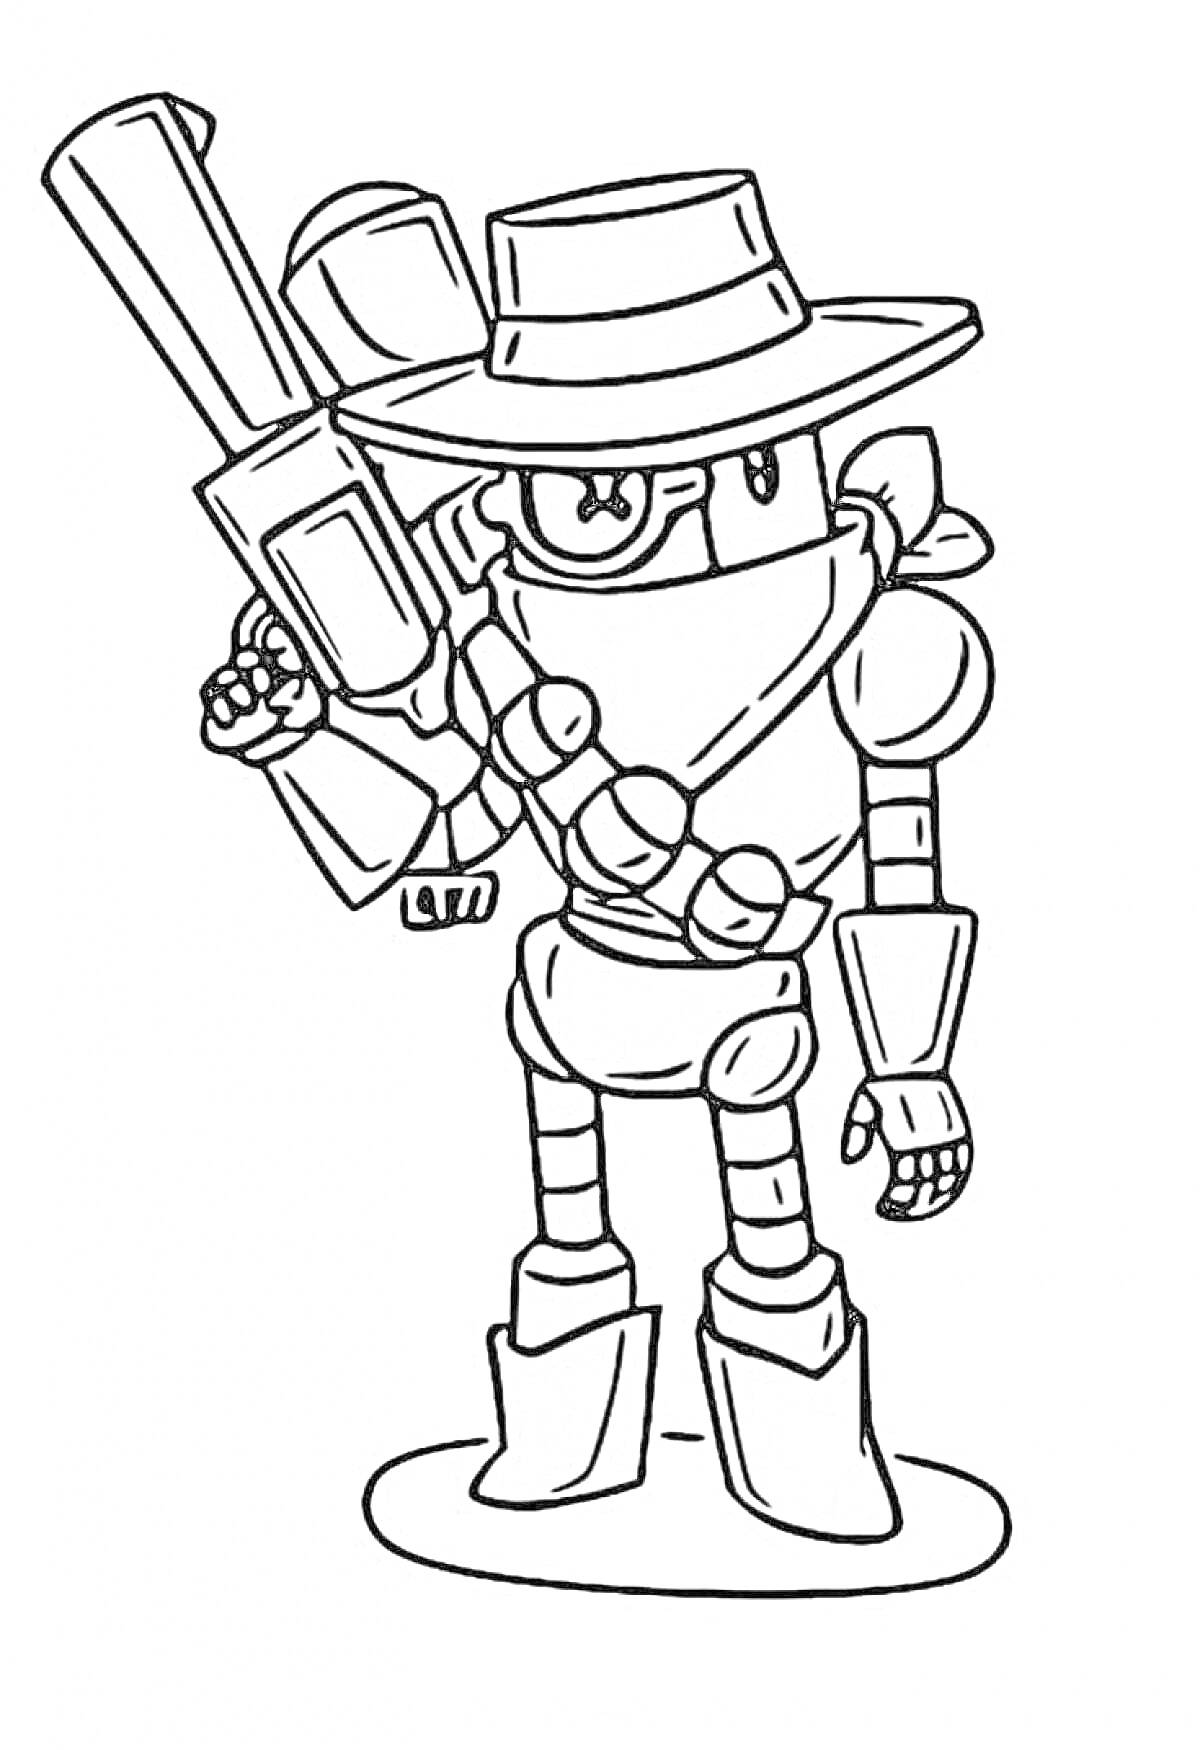 Раскраска Робот-ковбой с огромной пушкой из игры Браво старс